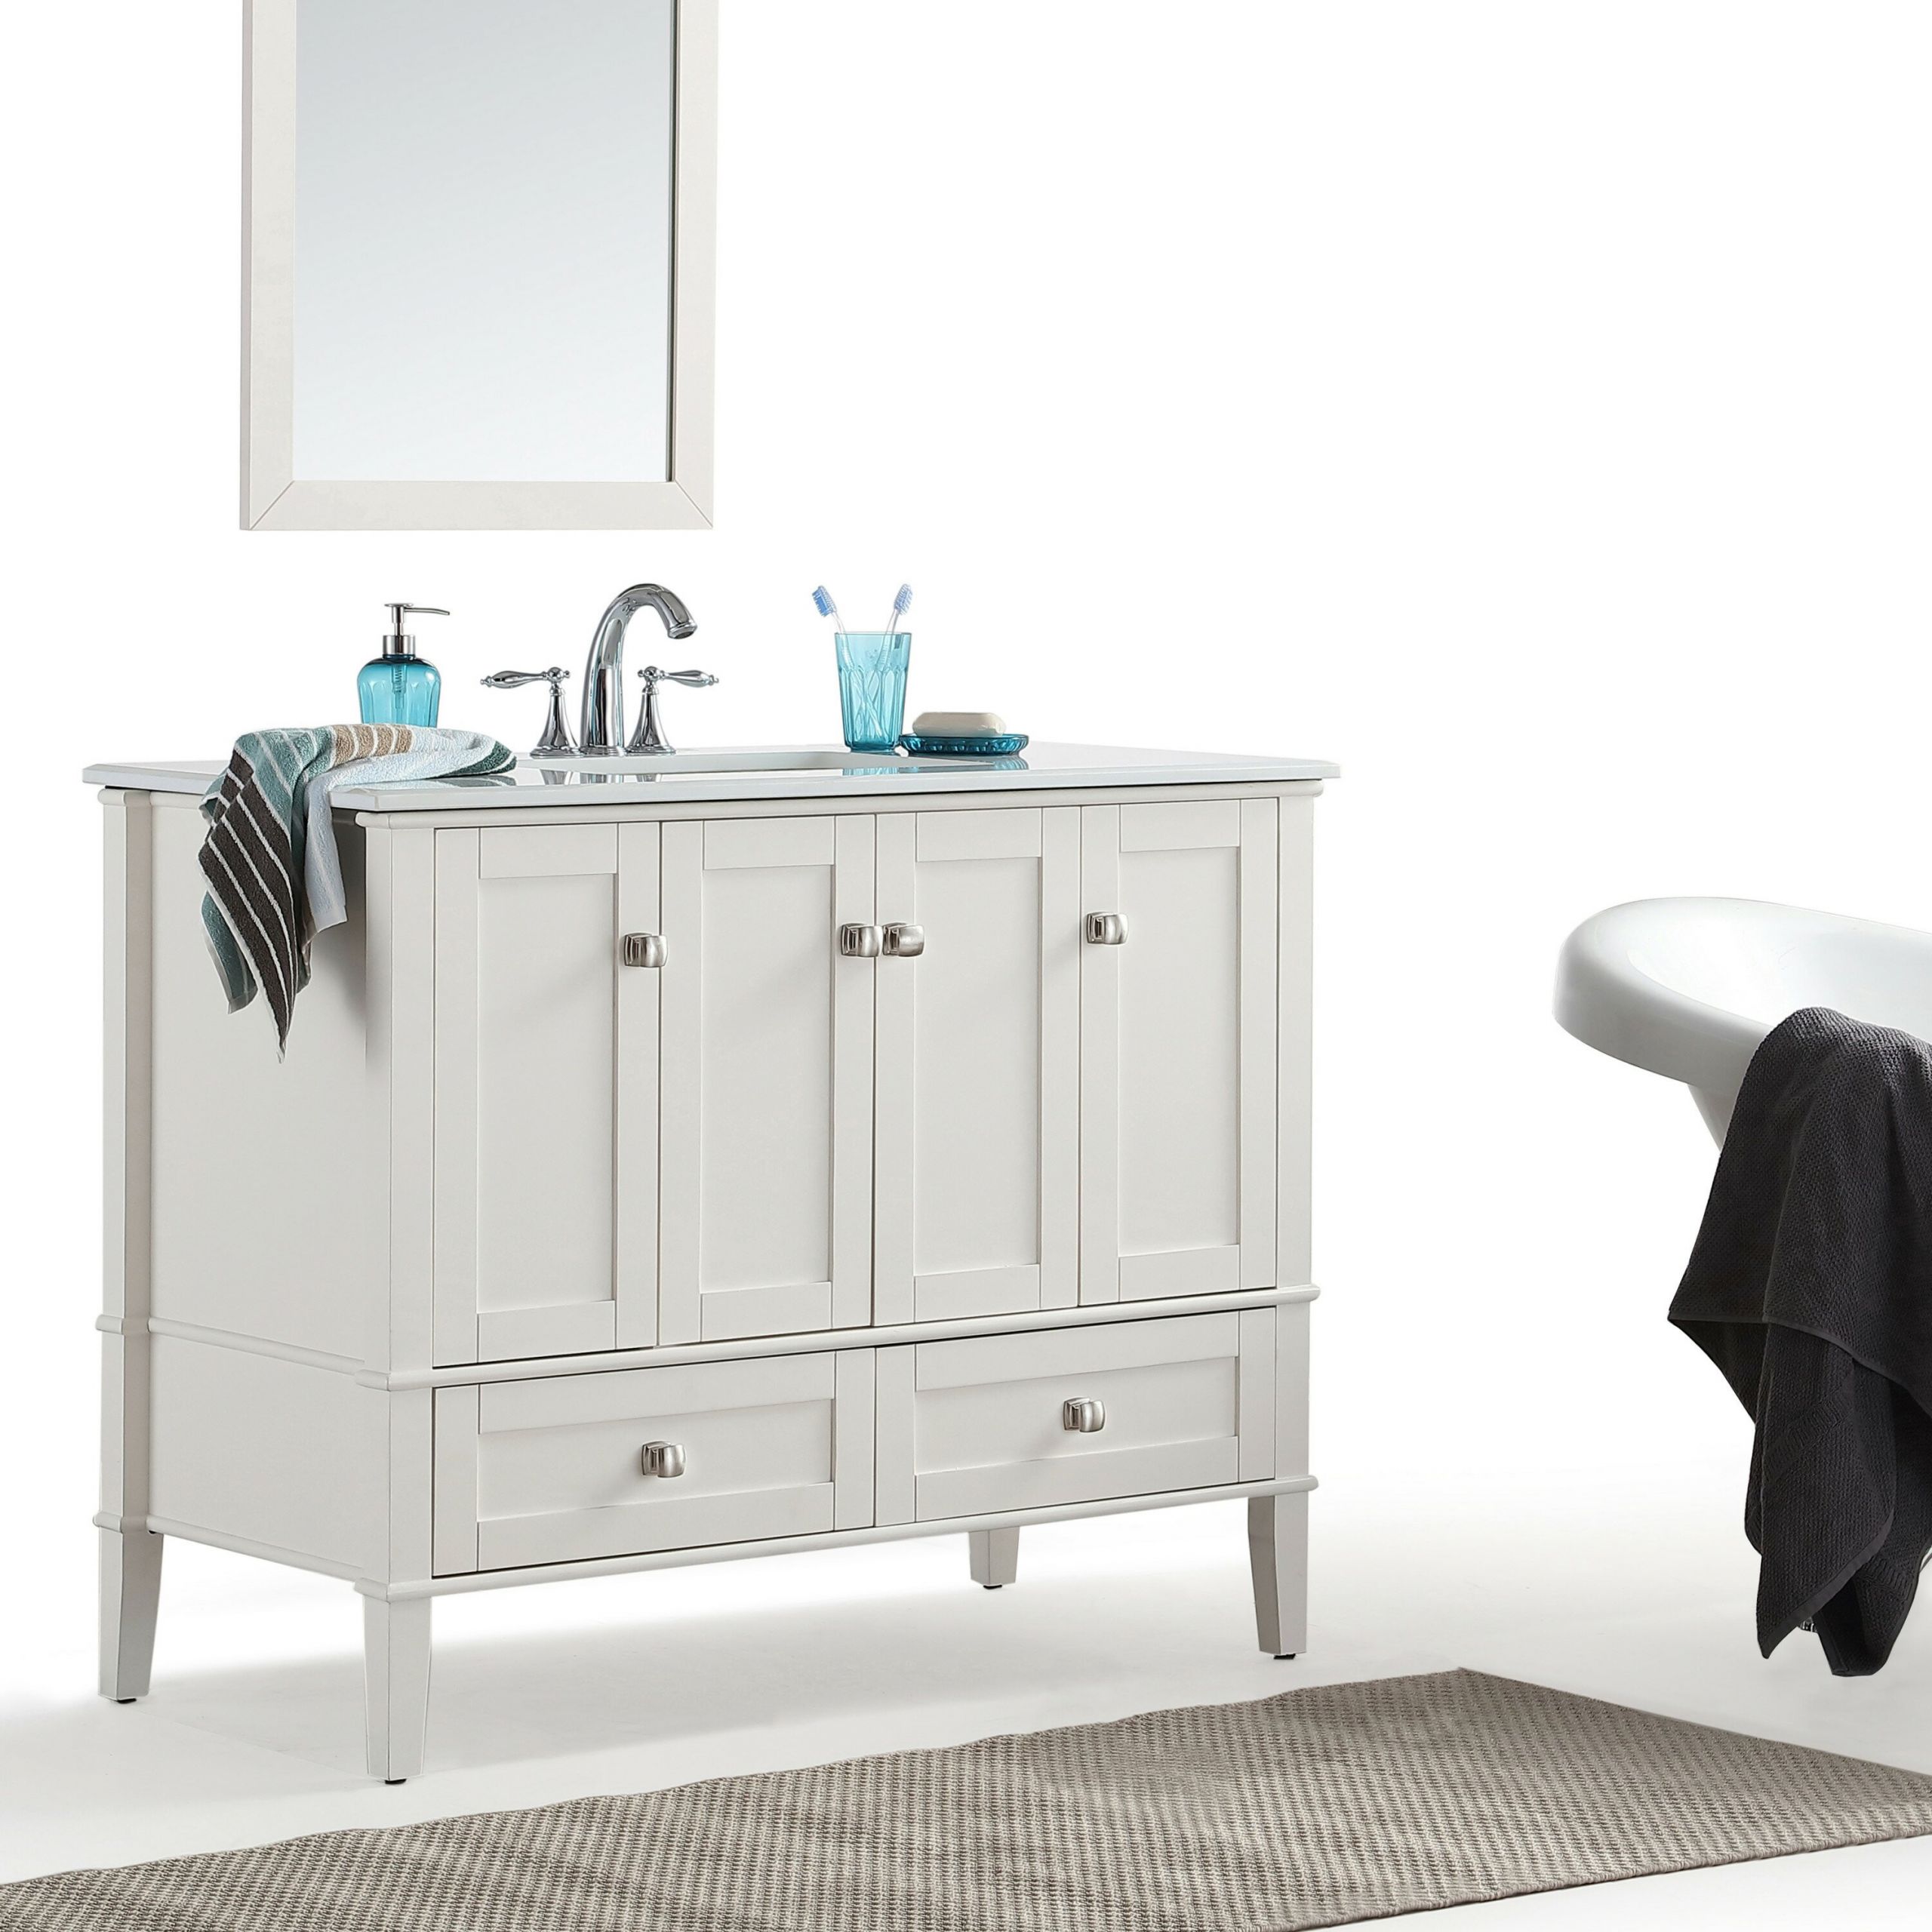 42 Bathroom Vanity With Top
 Simpli Home Chelsea 42" Single Bathroom Vanity with Quartz